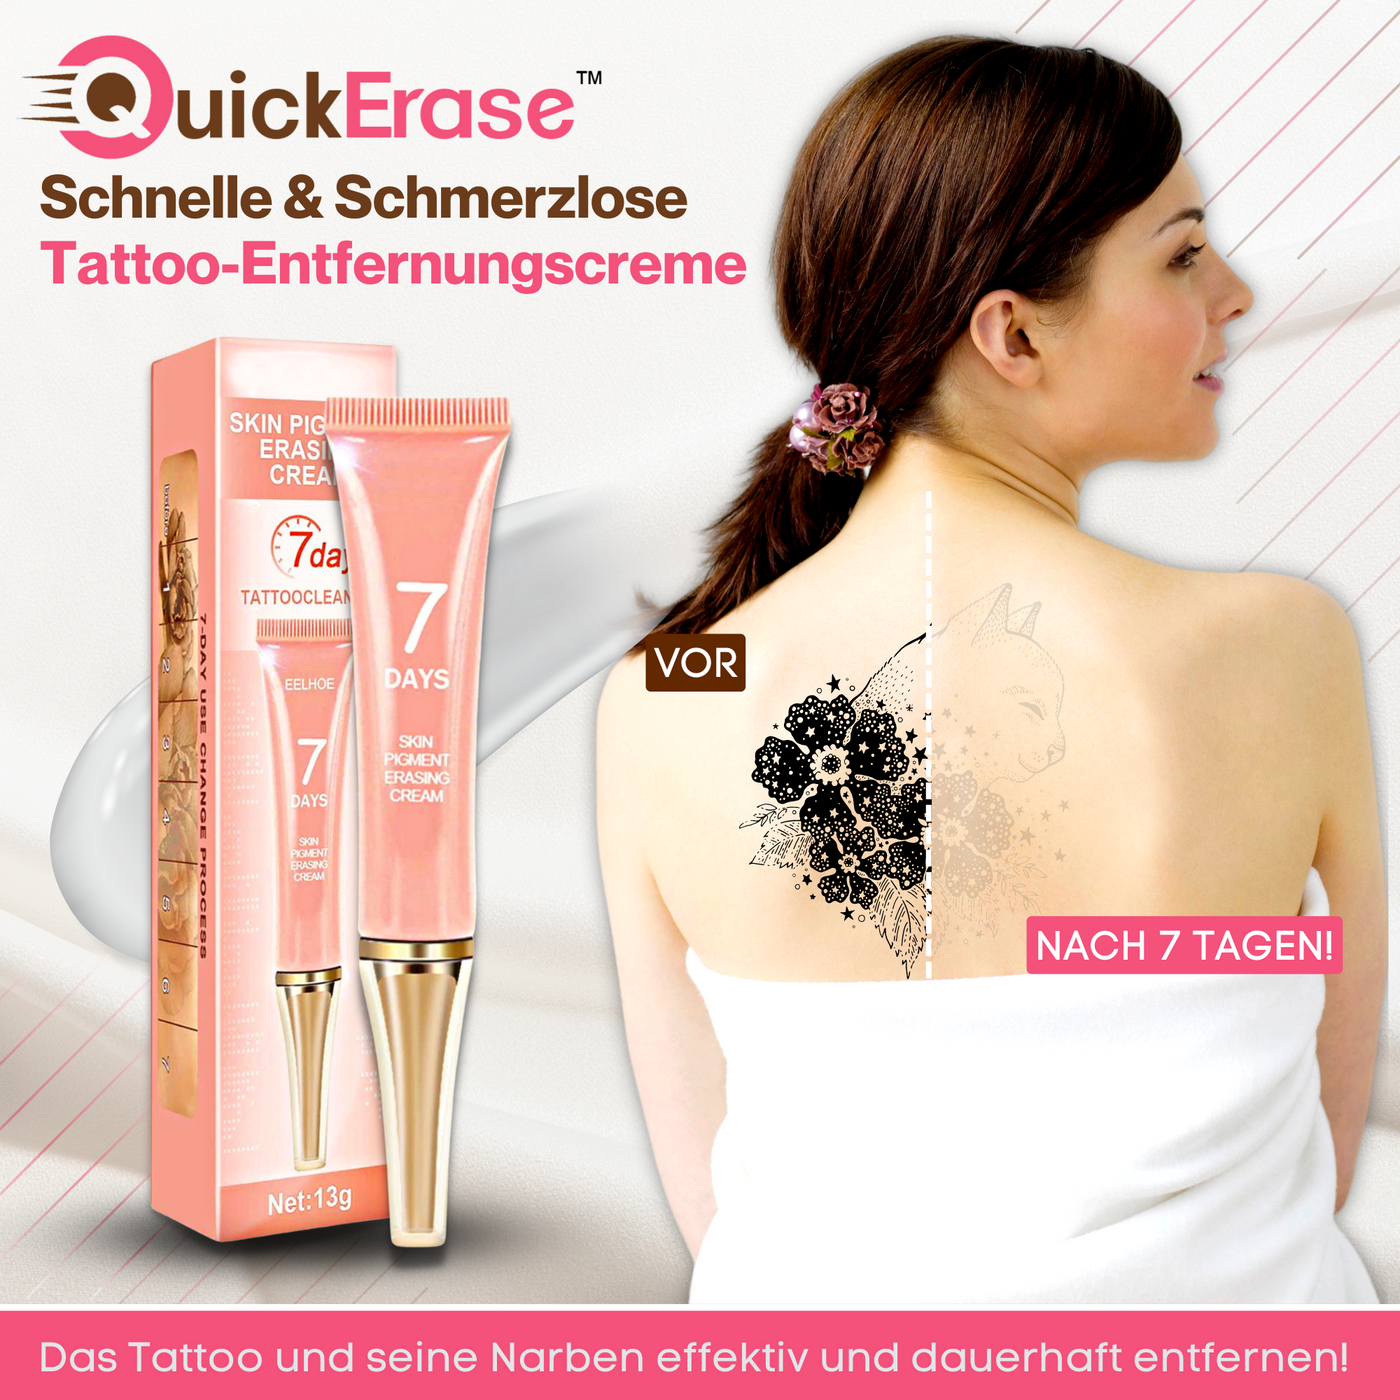 Holen Sie sich 3x QuickErase™ Schnelle & Schmerzlose Tattoo-Entfernungscreme mit 70 % Rabatt!